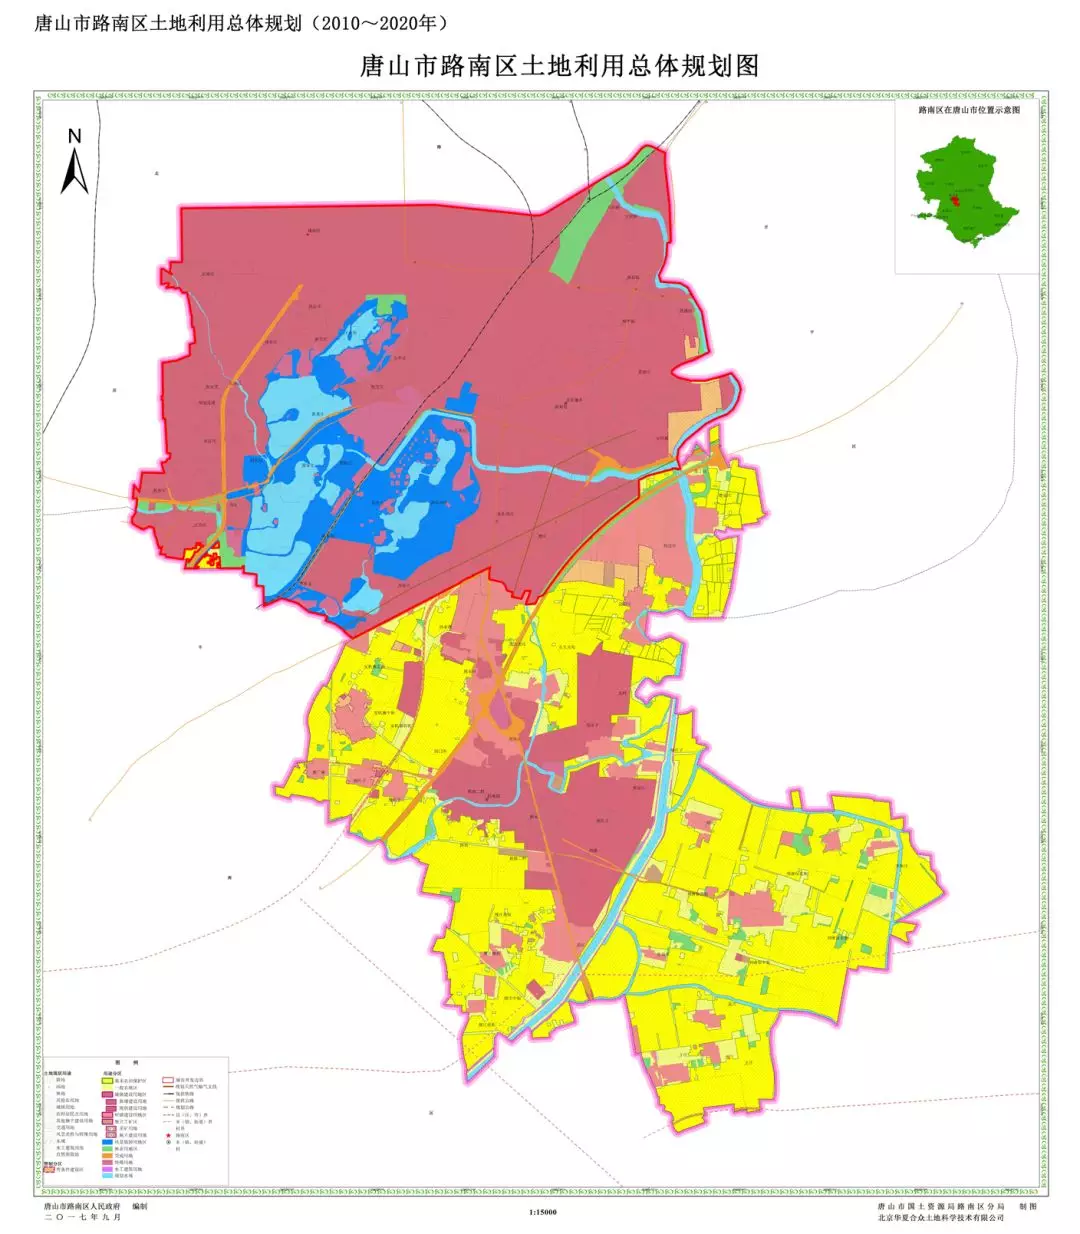 玉田县,迁安市网站分别发布了2010-2020年的土地利用总体规划